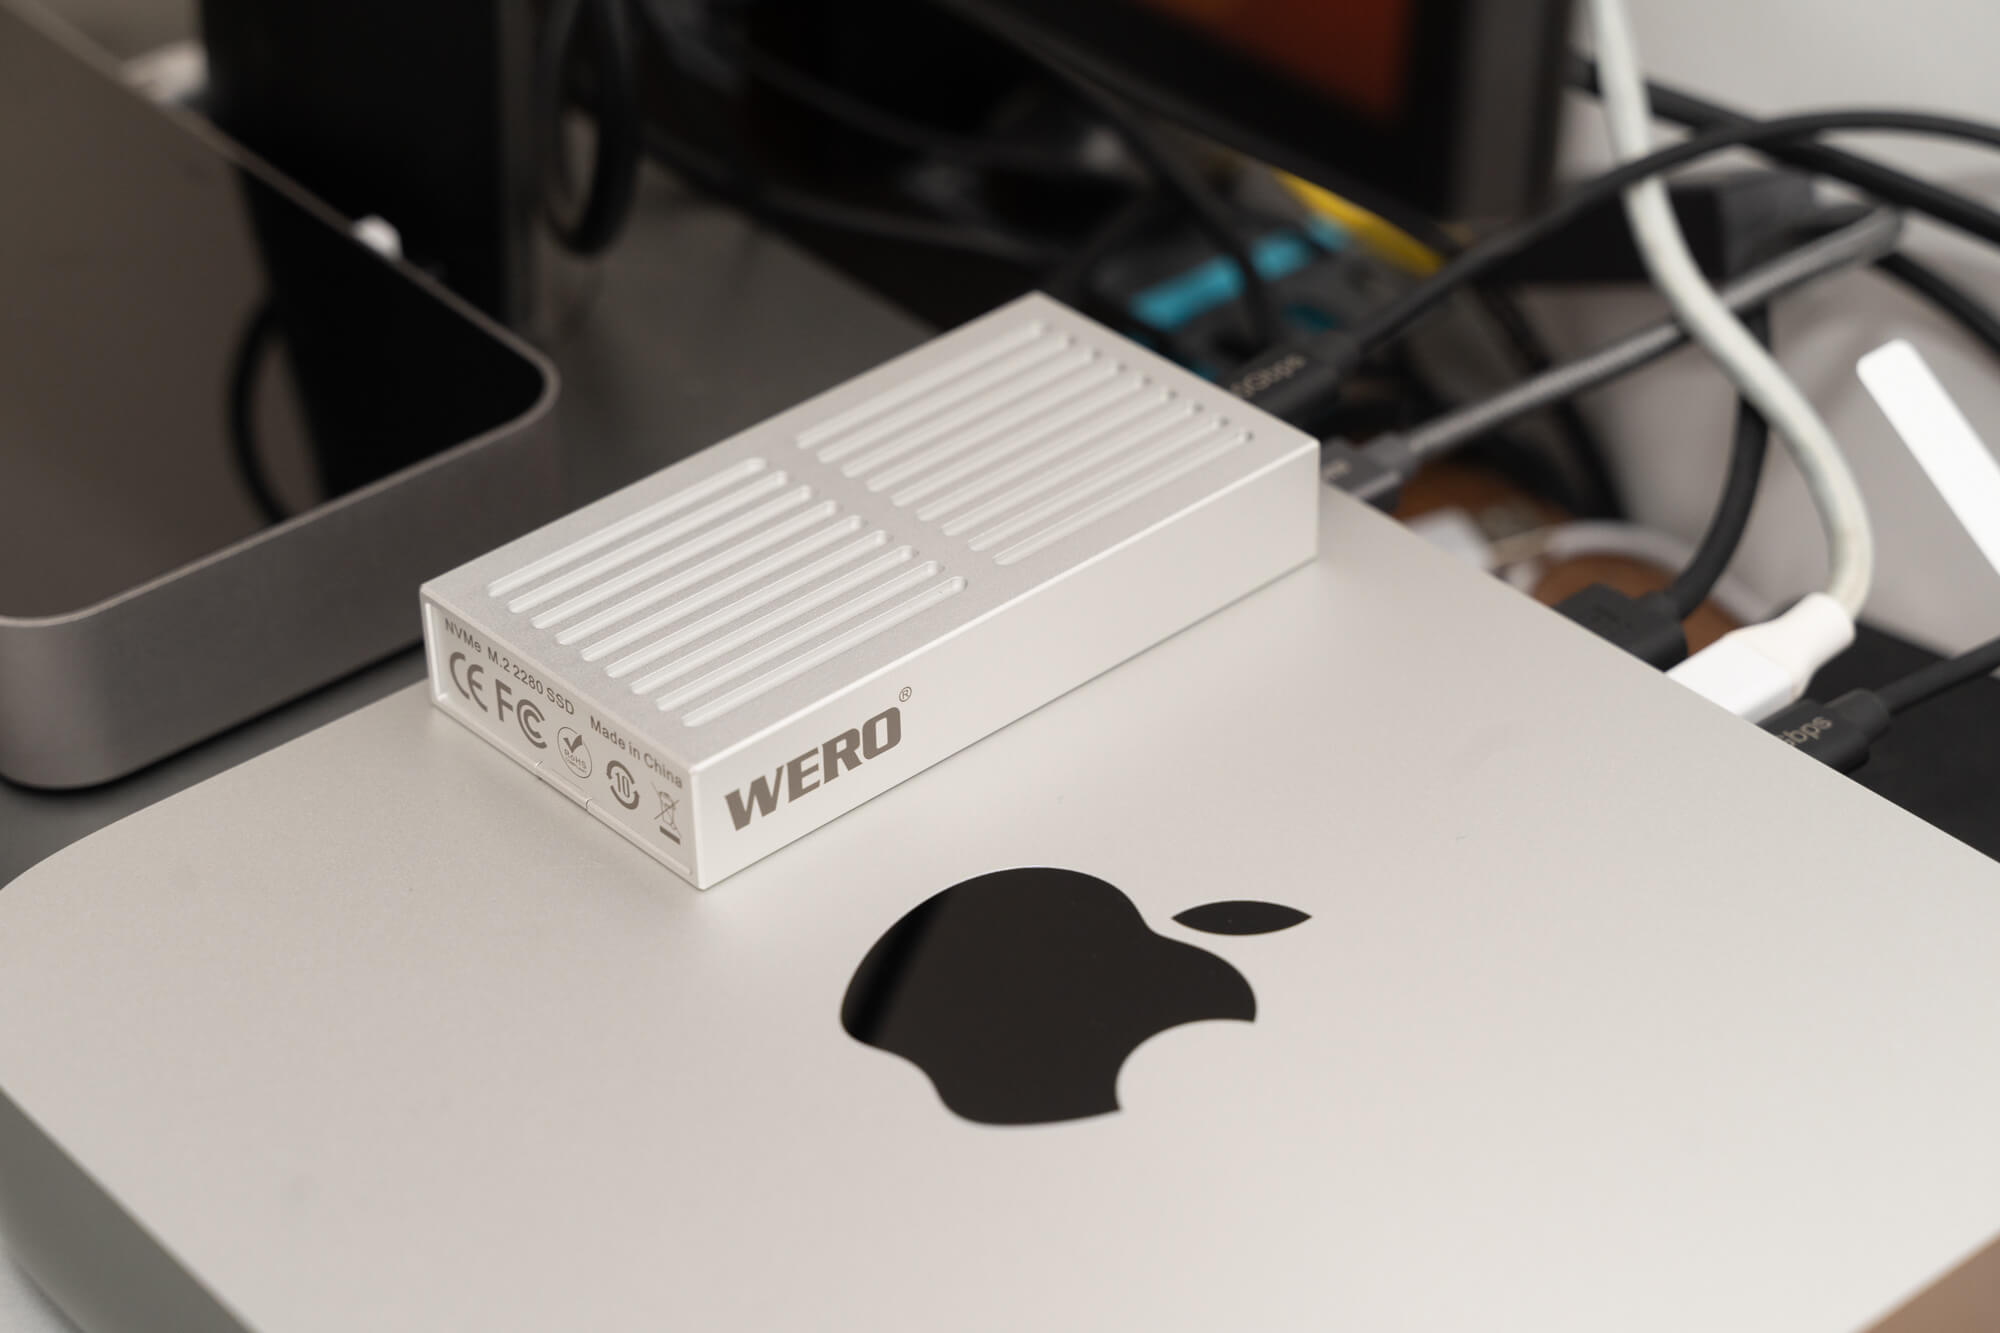 MacBook Pro 如何更换 SSD 硬盘？ - 知乎